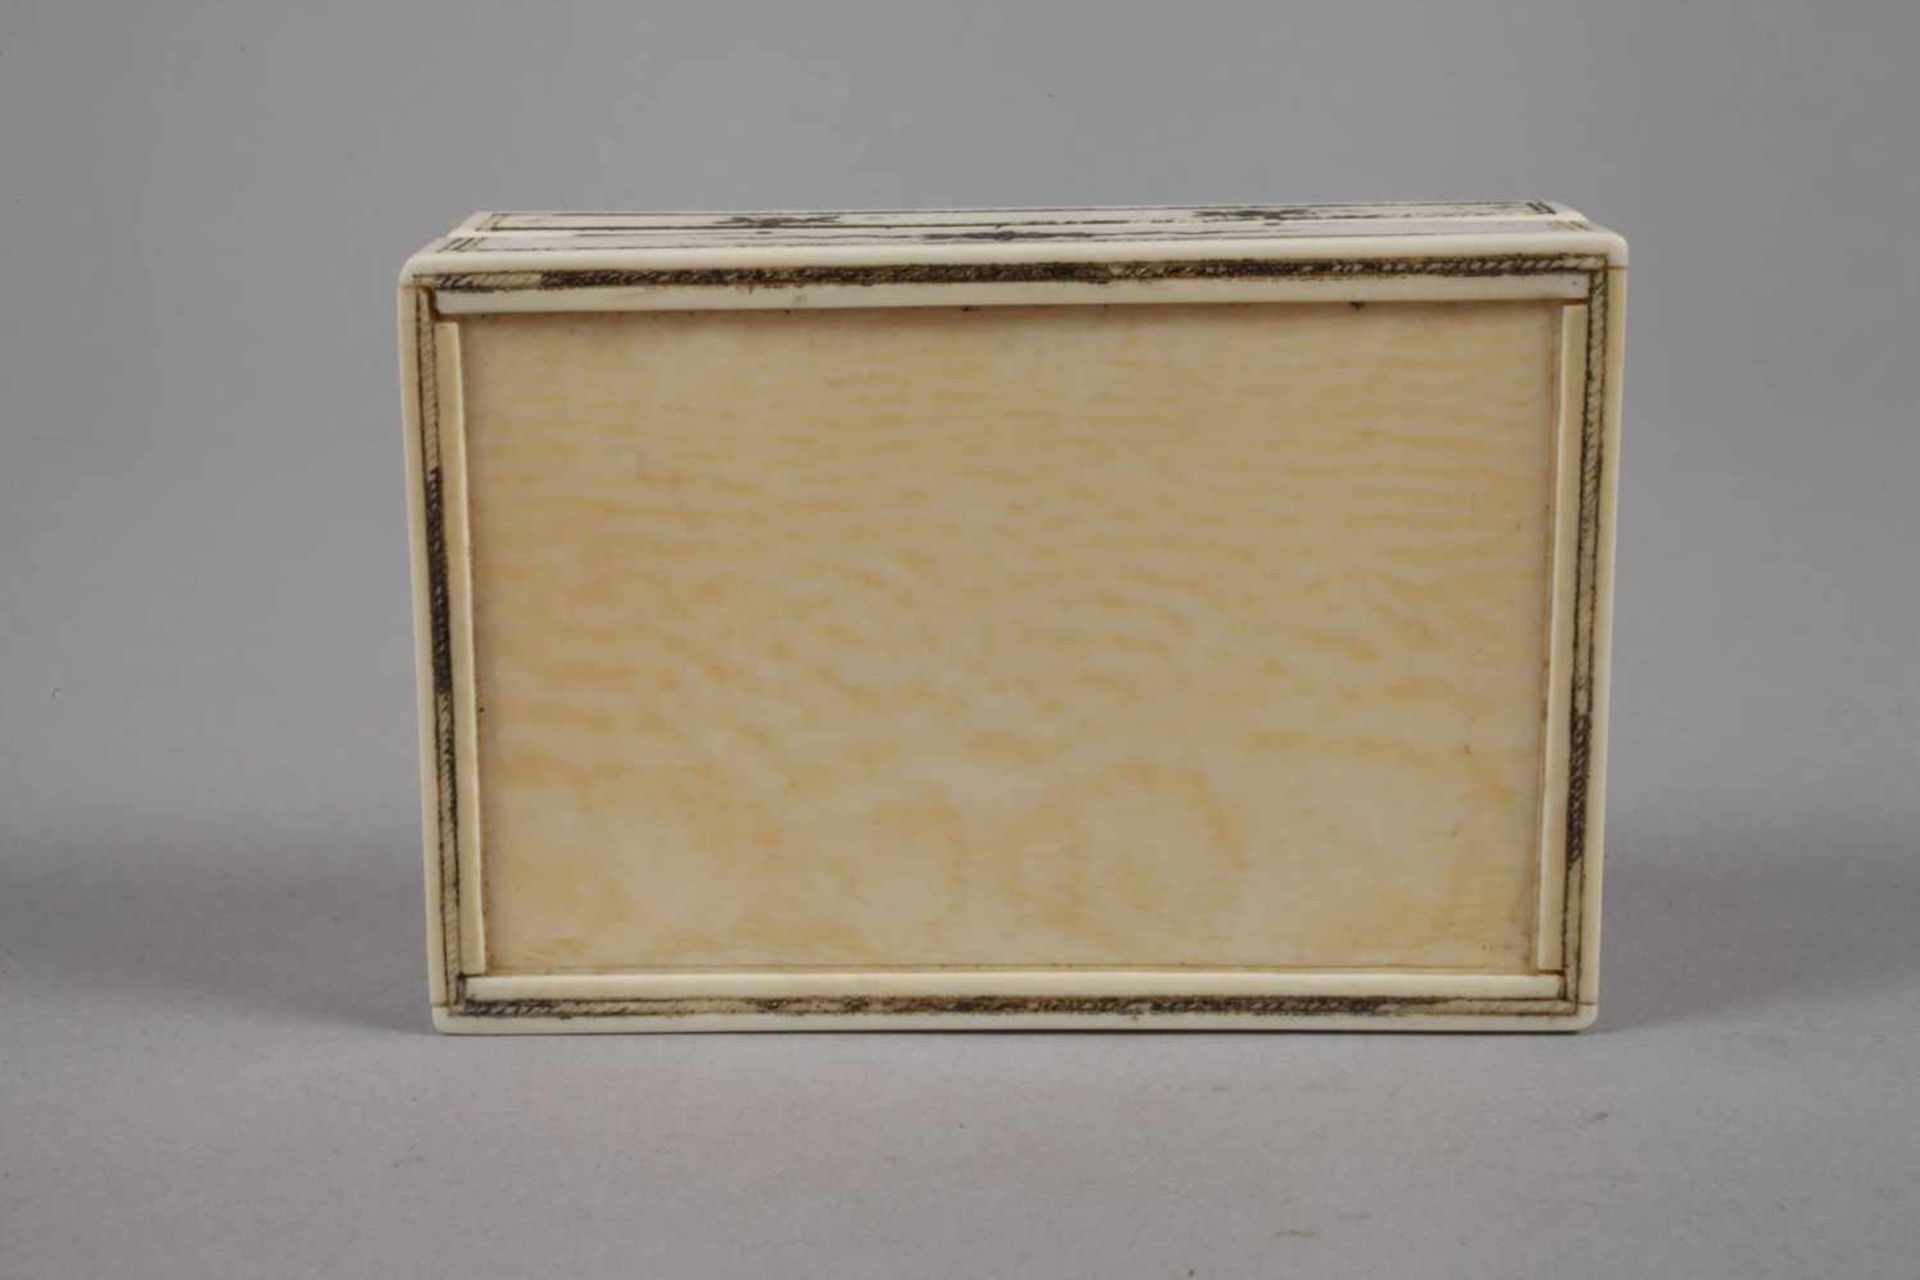 Feine Dose Elfenbeinum 1780, Elfenbein, fein graviert und silberbronziert, mehrteilig gefertigt - Bild 4 aus 5